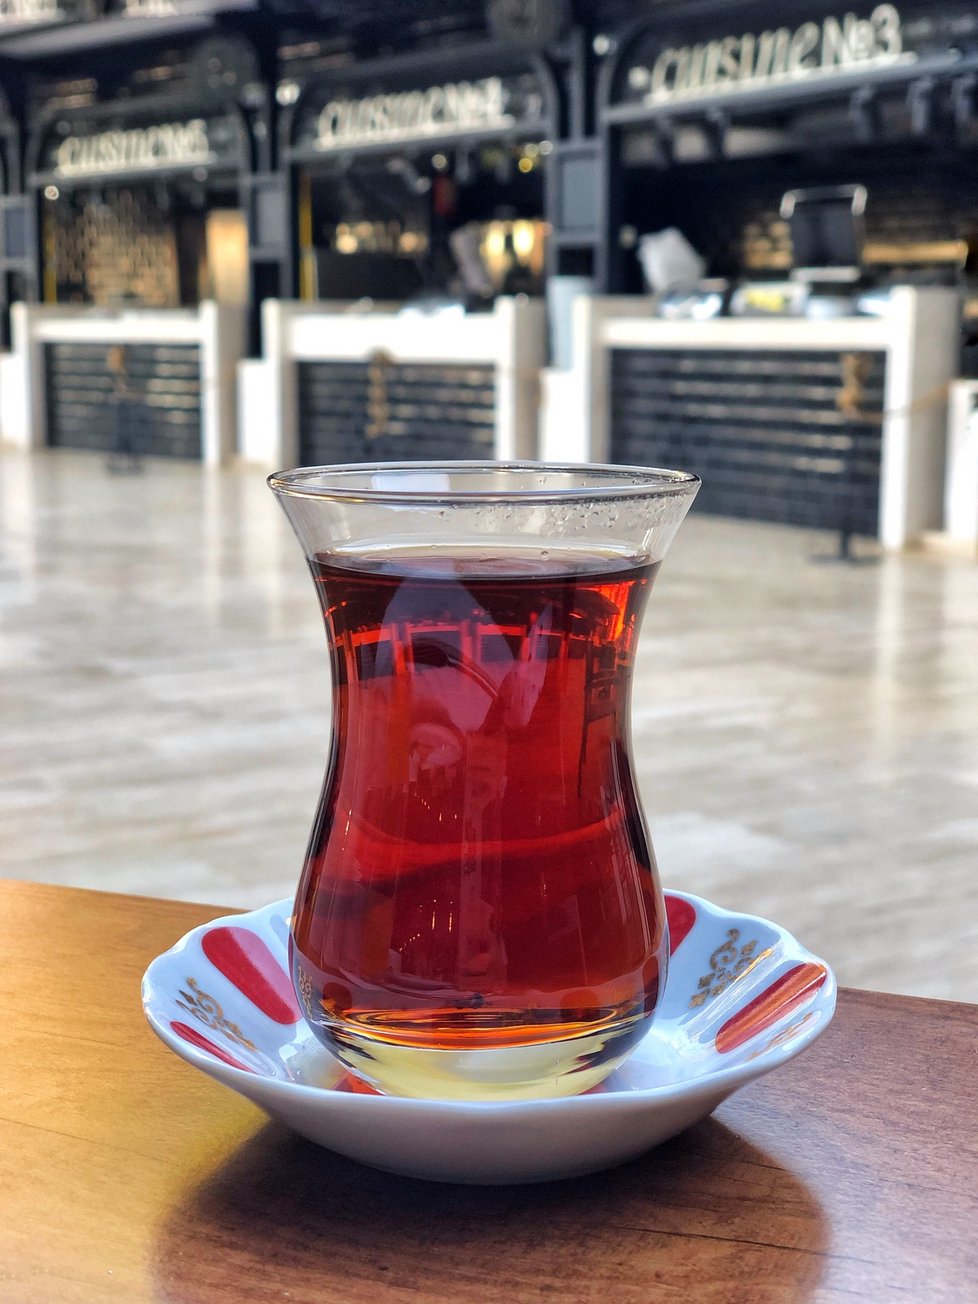 Turecký čaj, tradičně podávaný